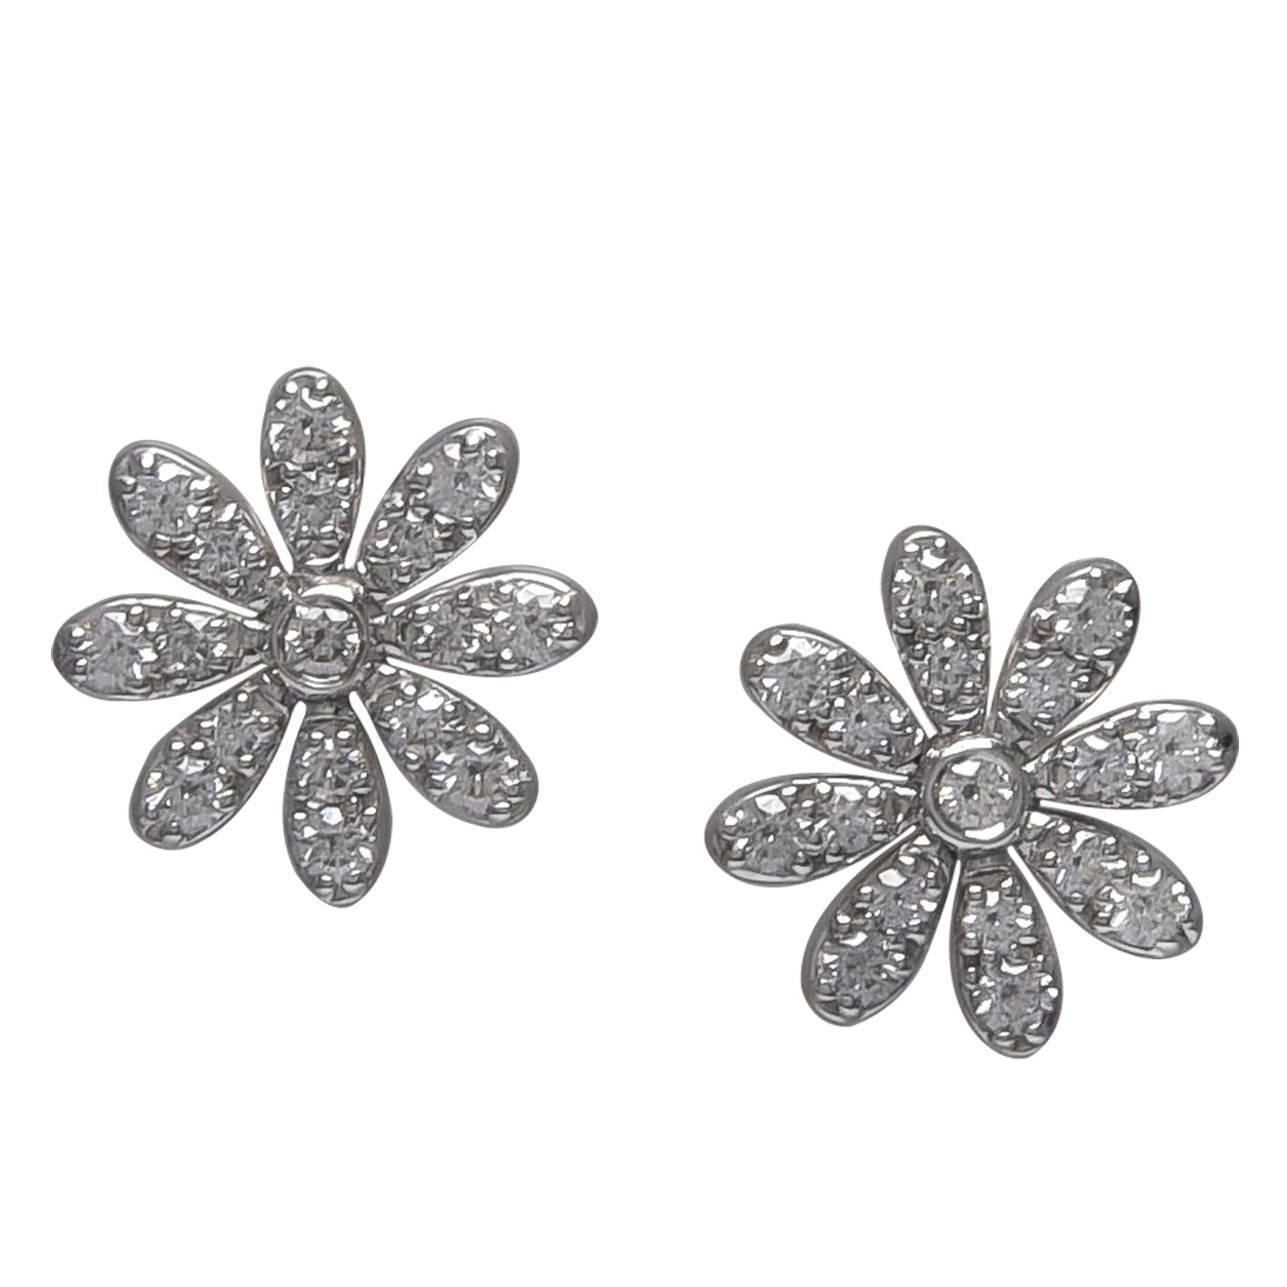 Tiffany & Co. Paloma Picasso Platinum Diamond Daisy Earrings